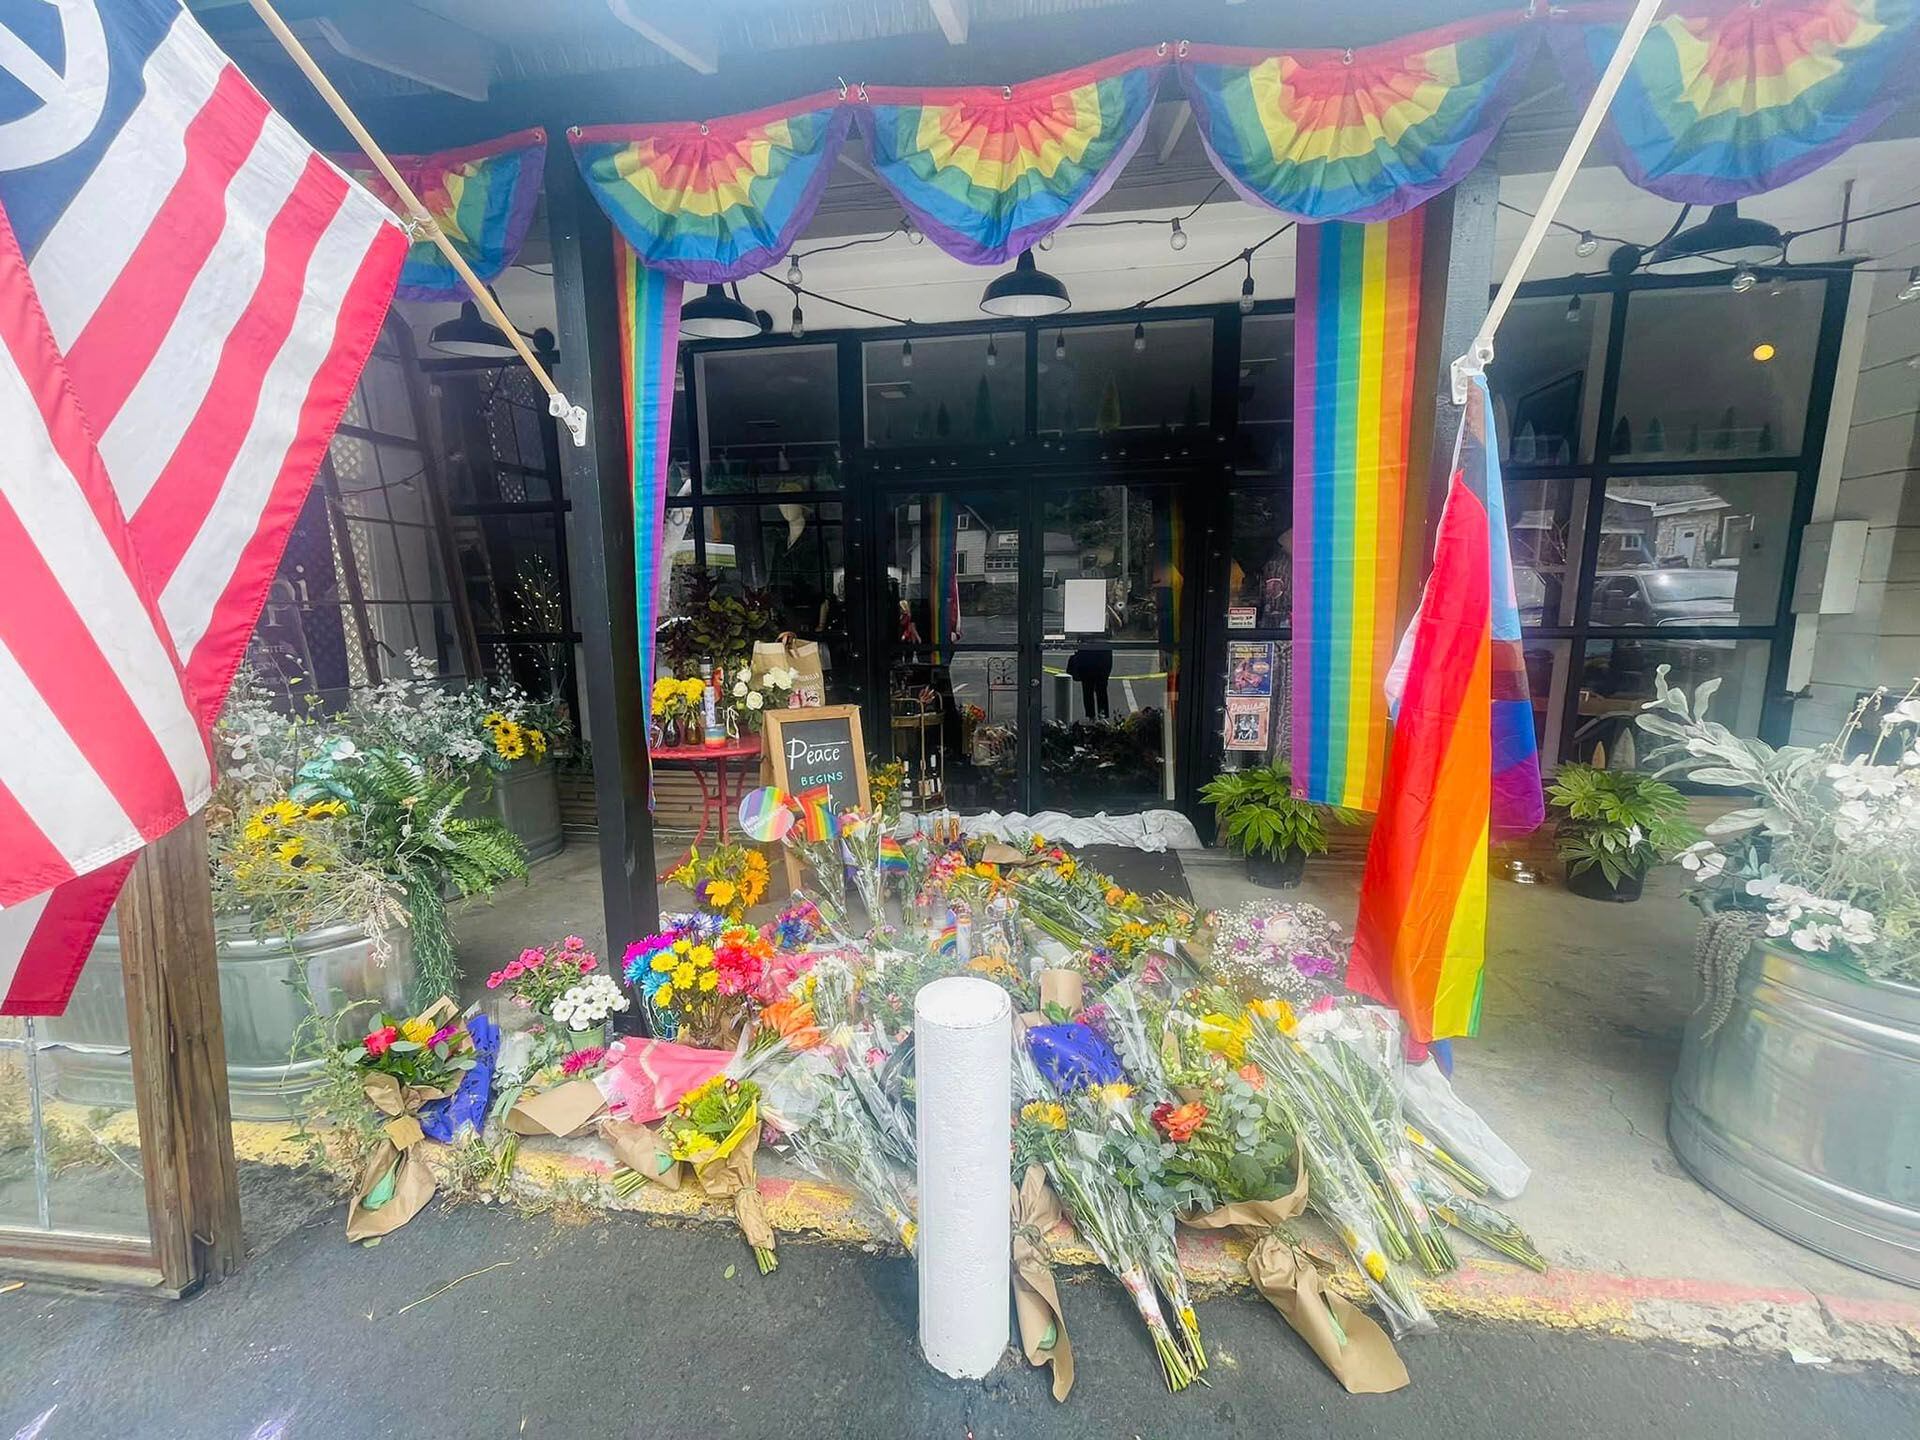 Laura Ann Carleton murió el viernes (18 de agosto) tras recibir un disparo después de que un hombre hiciera "comentarios despectivos" sobre una bandera del Orgullo LGBTQ+ colocada frente a su tienda. (Mountain Provisions Cooperative)